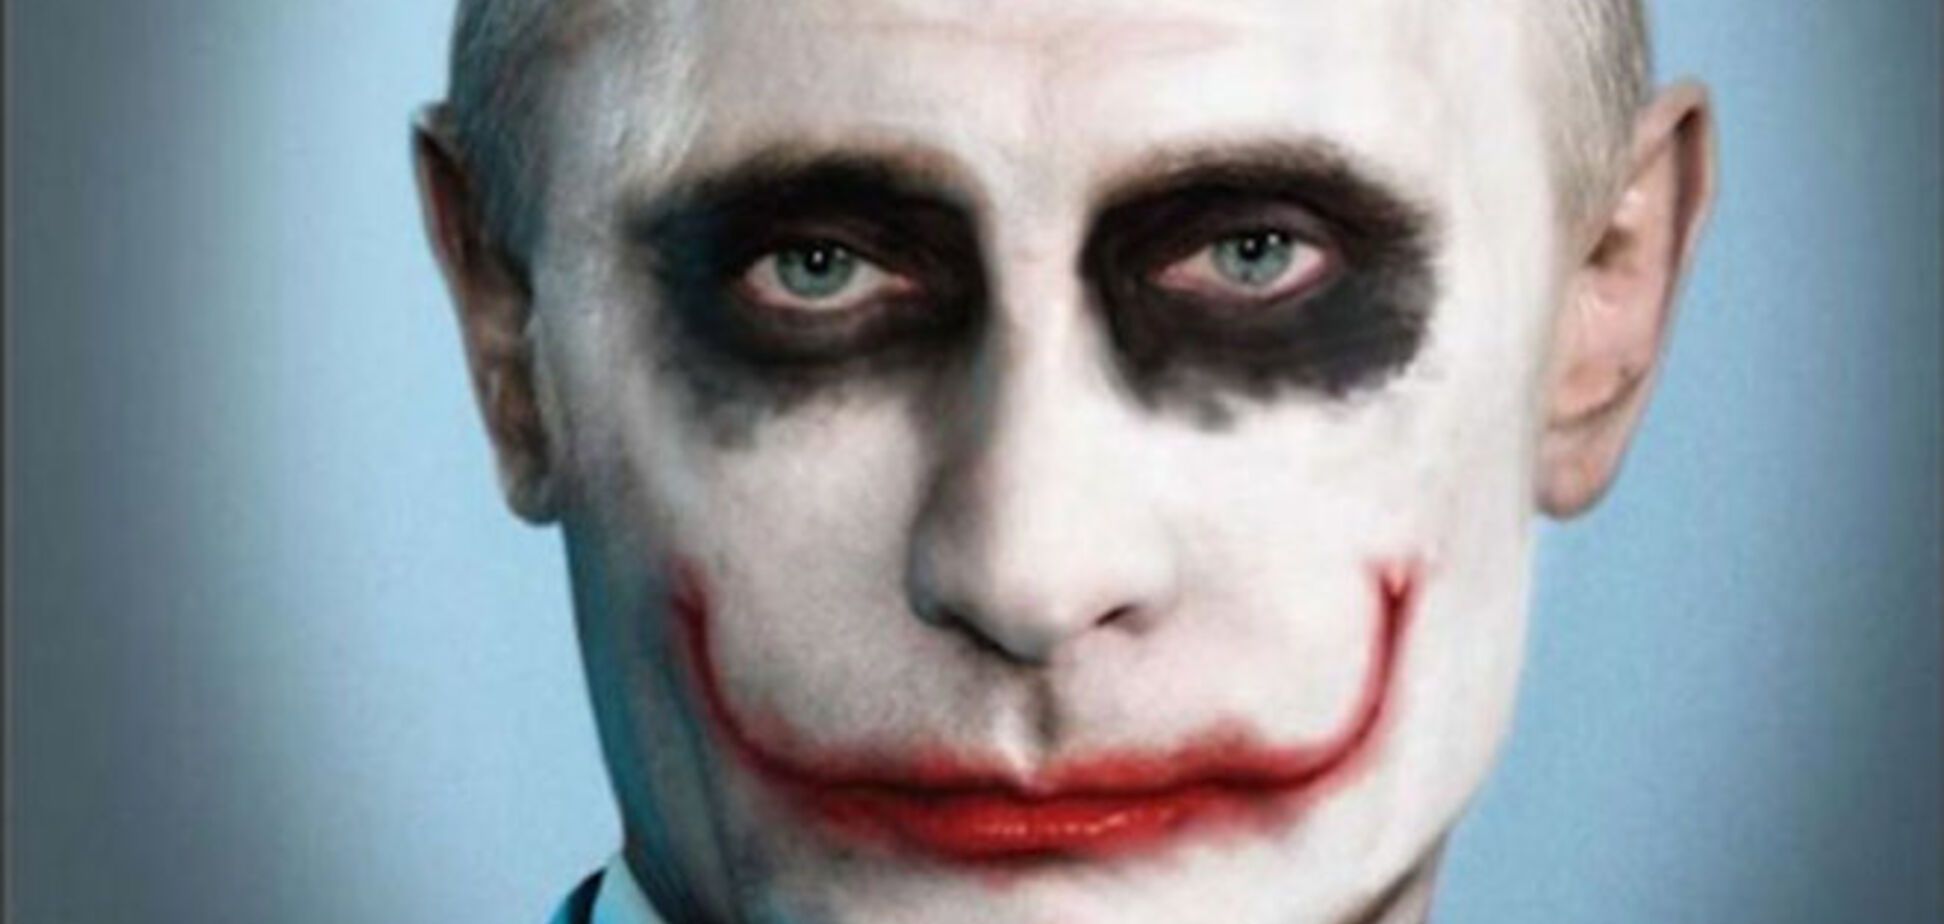 Выходки шоумена Путина приелись европейским лидерам, которые сделают работу над ошибками – мировые СМИ